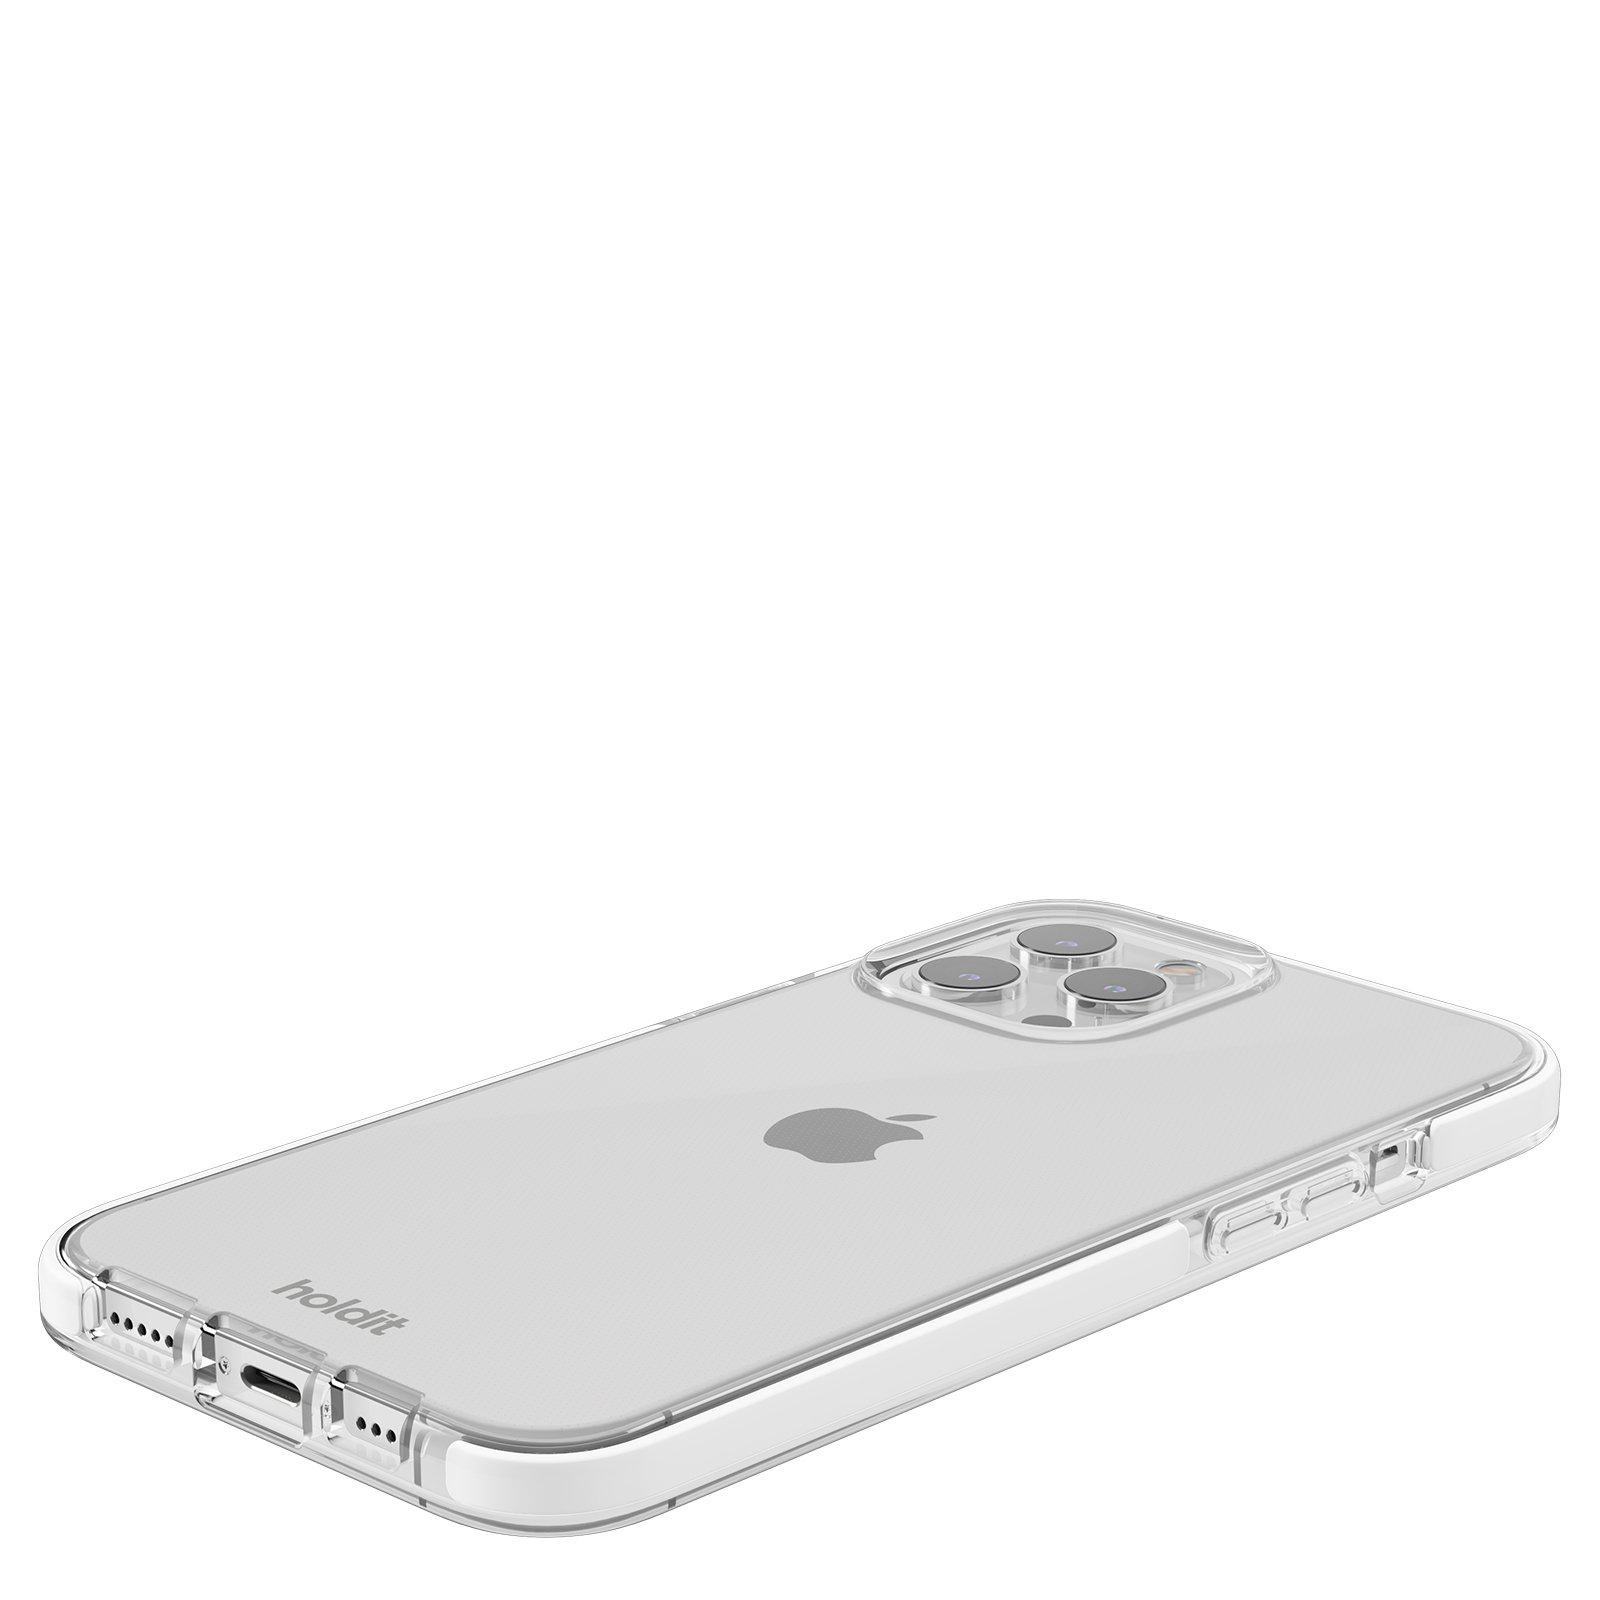 Гръб Holdit Seethru Case за iPhone 13 Pro Max - Прозрачен